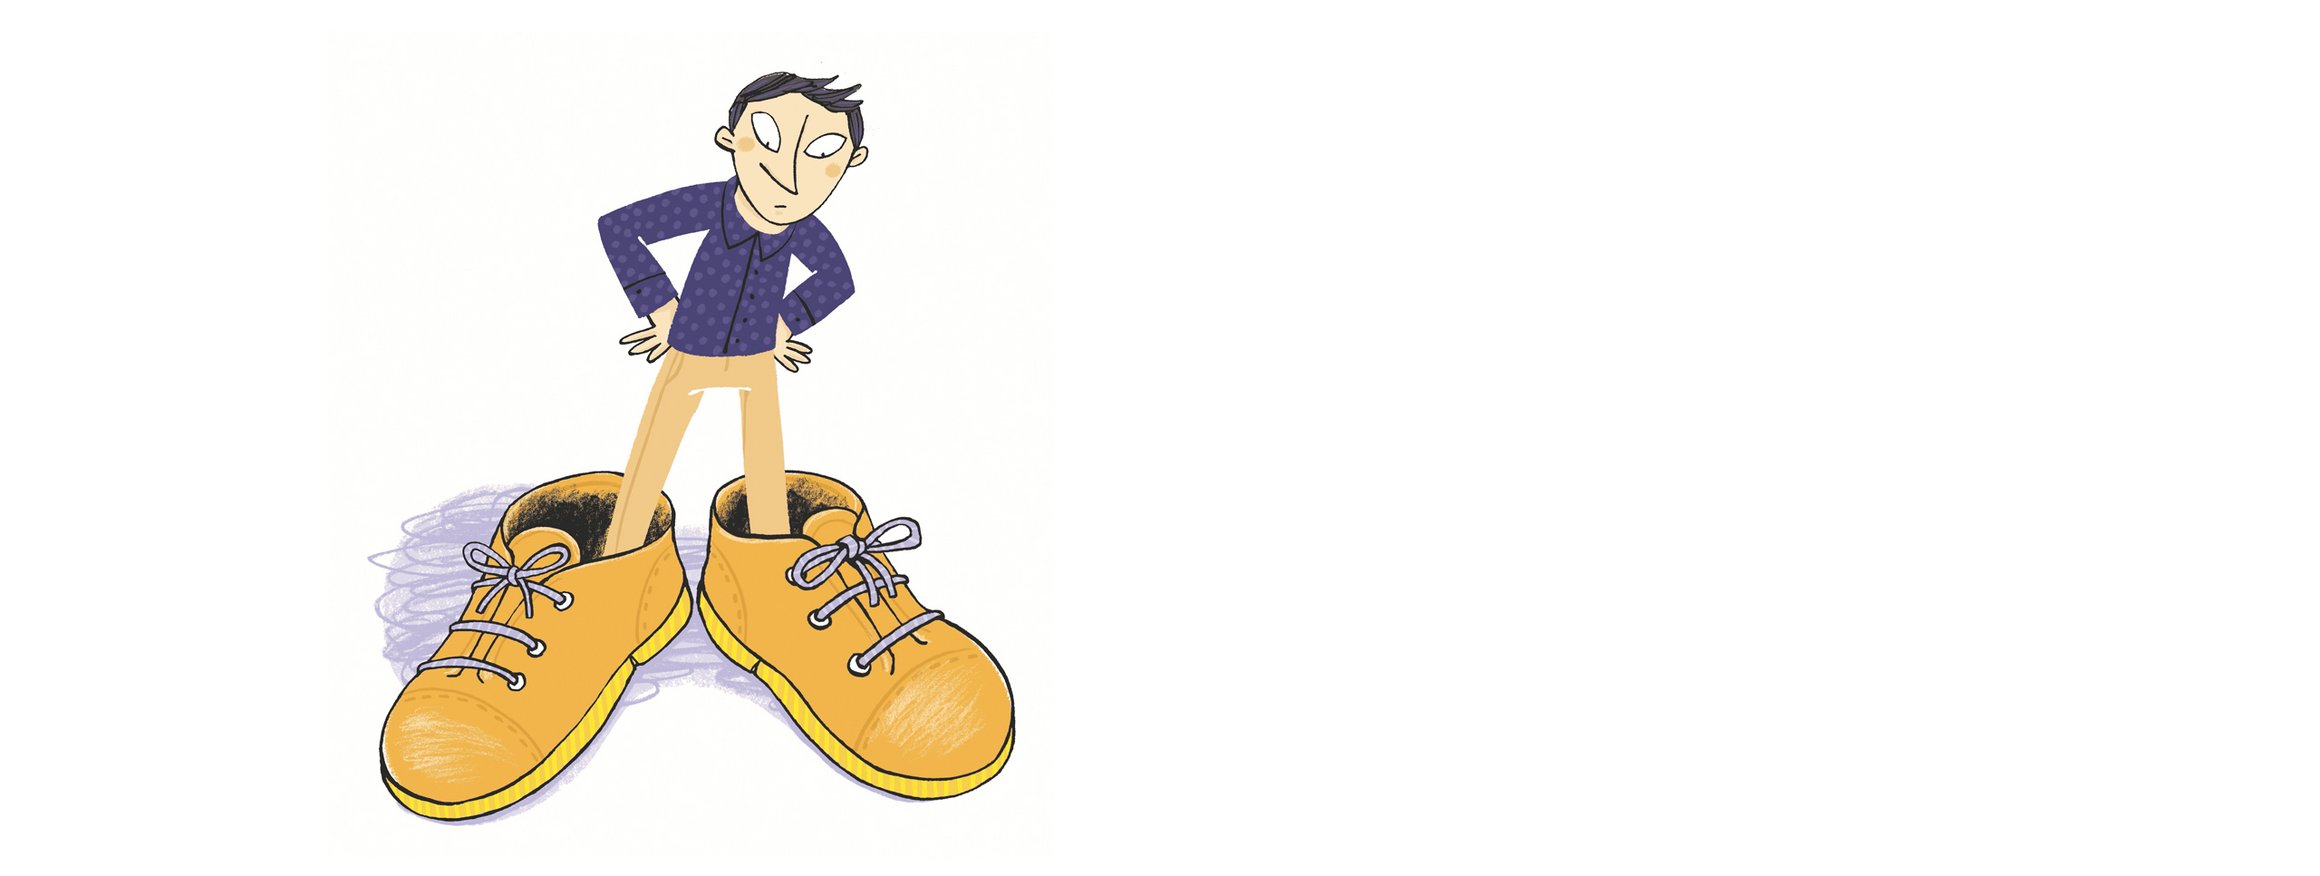 Die Illustration zeigt einen Mann, der skeptisch schaut, und an seinen Füßen viel zu große Schuhe trägt.